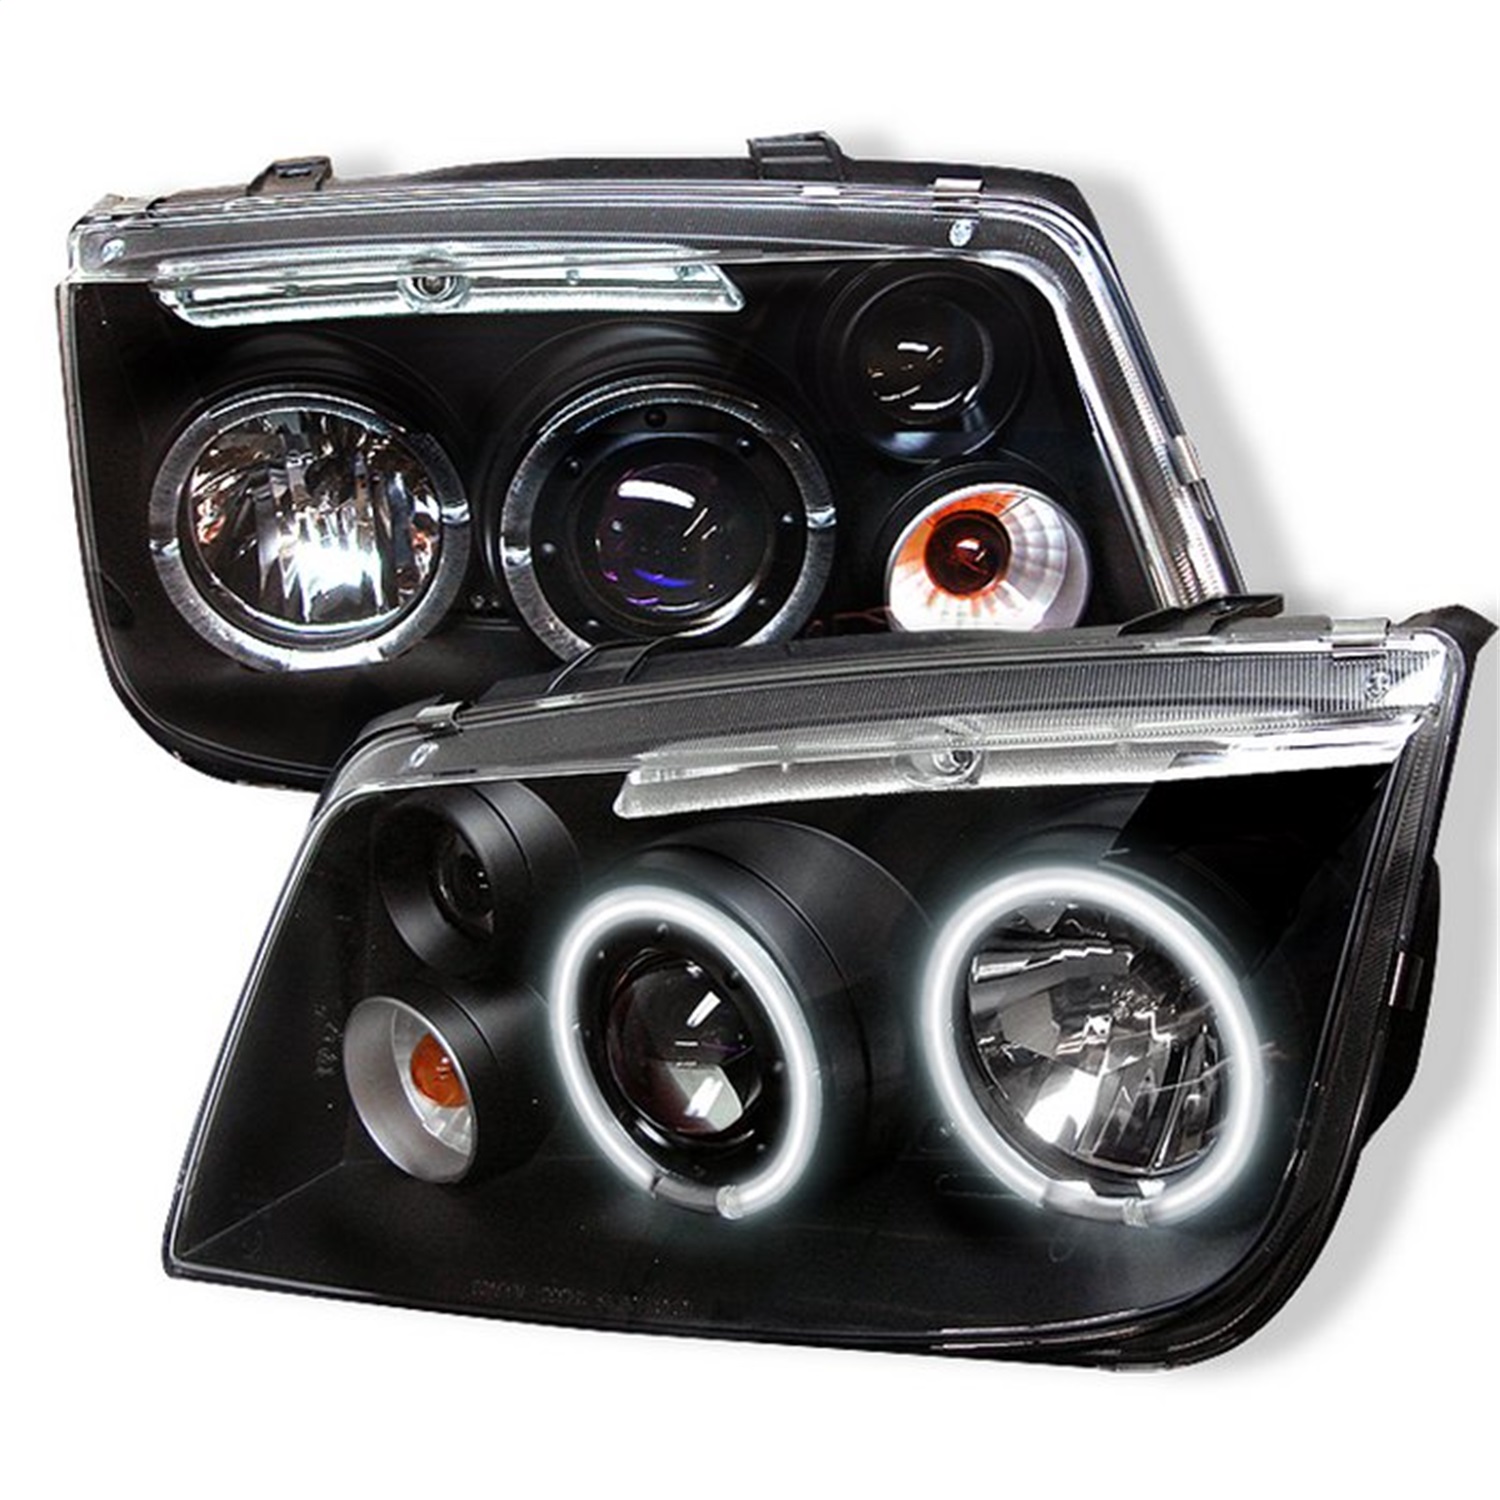 Spyder Auto 5012210 CCFL LED Projector Headlights Fits 99-05 Jetta